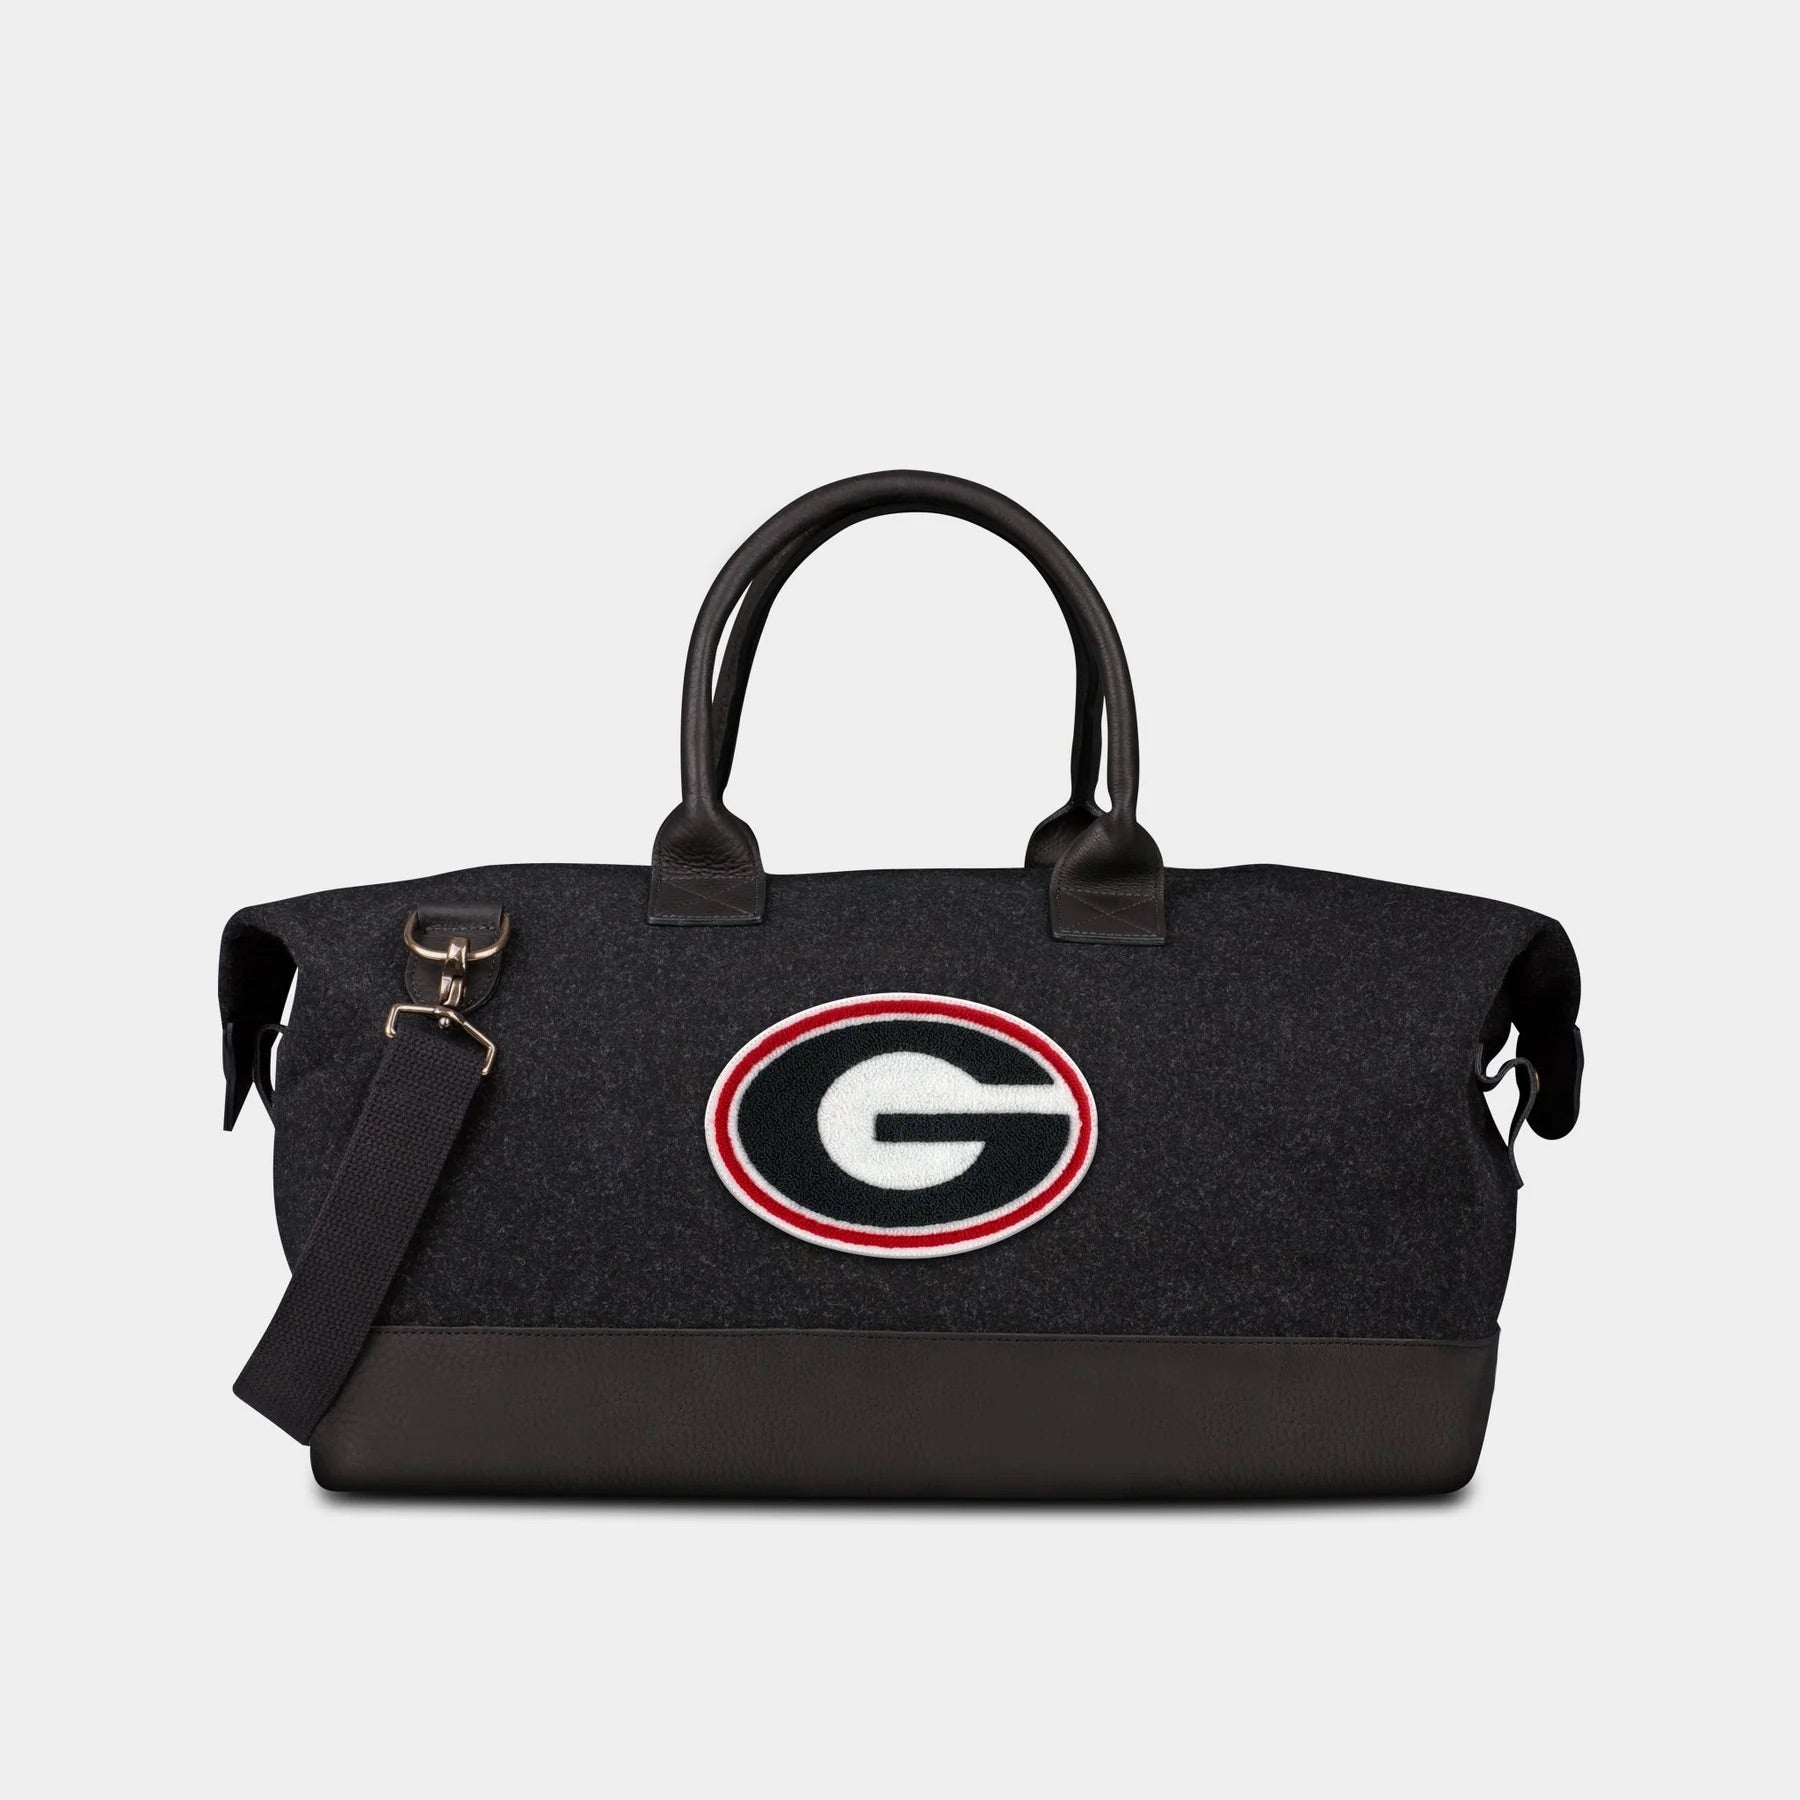 UGA "G" Weekender Duffle Bag in Black